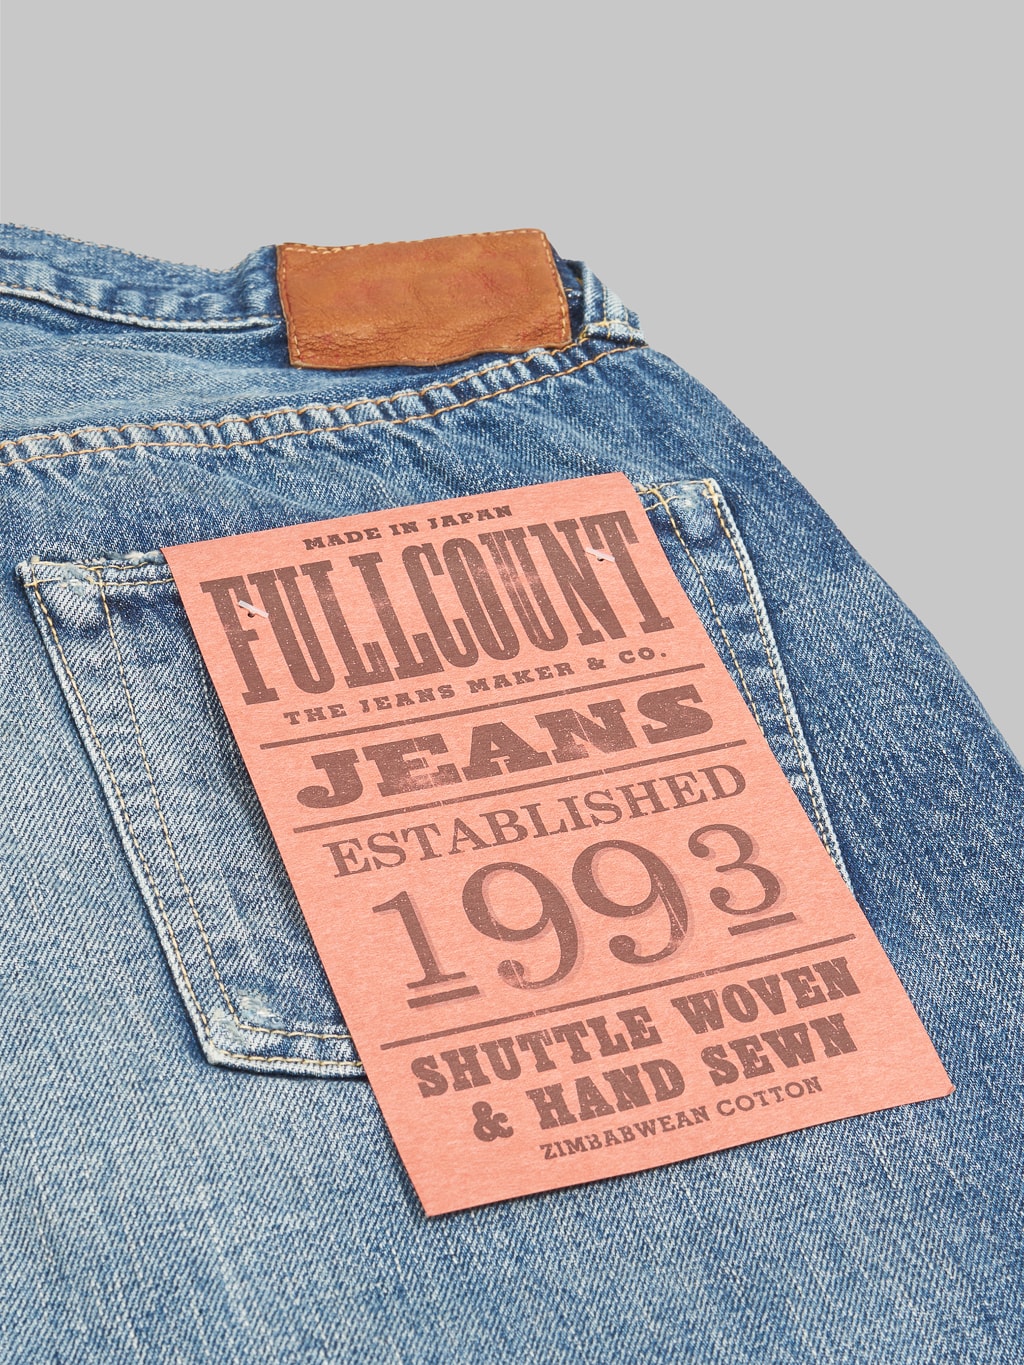 Fullcount 1101 Dartford wide Straight Jeans  back pocket